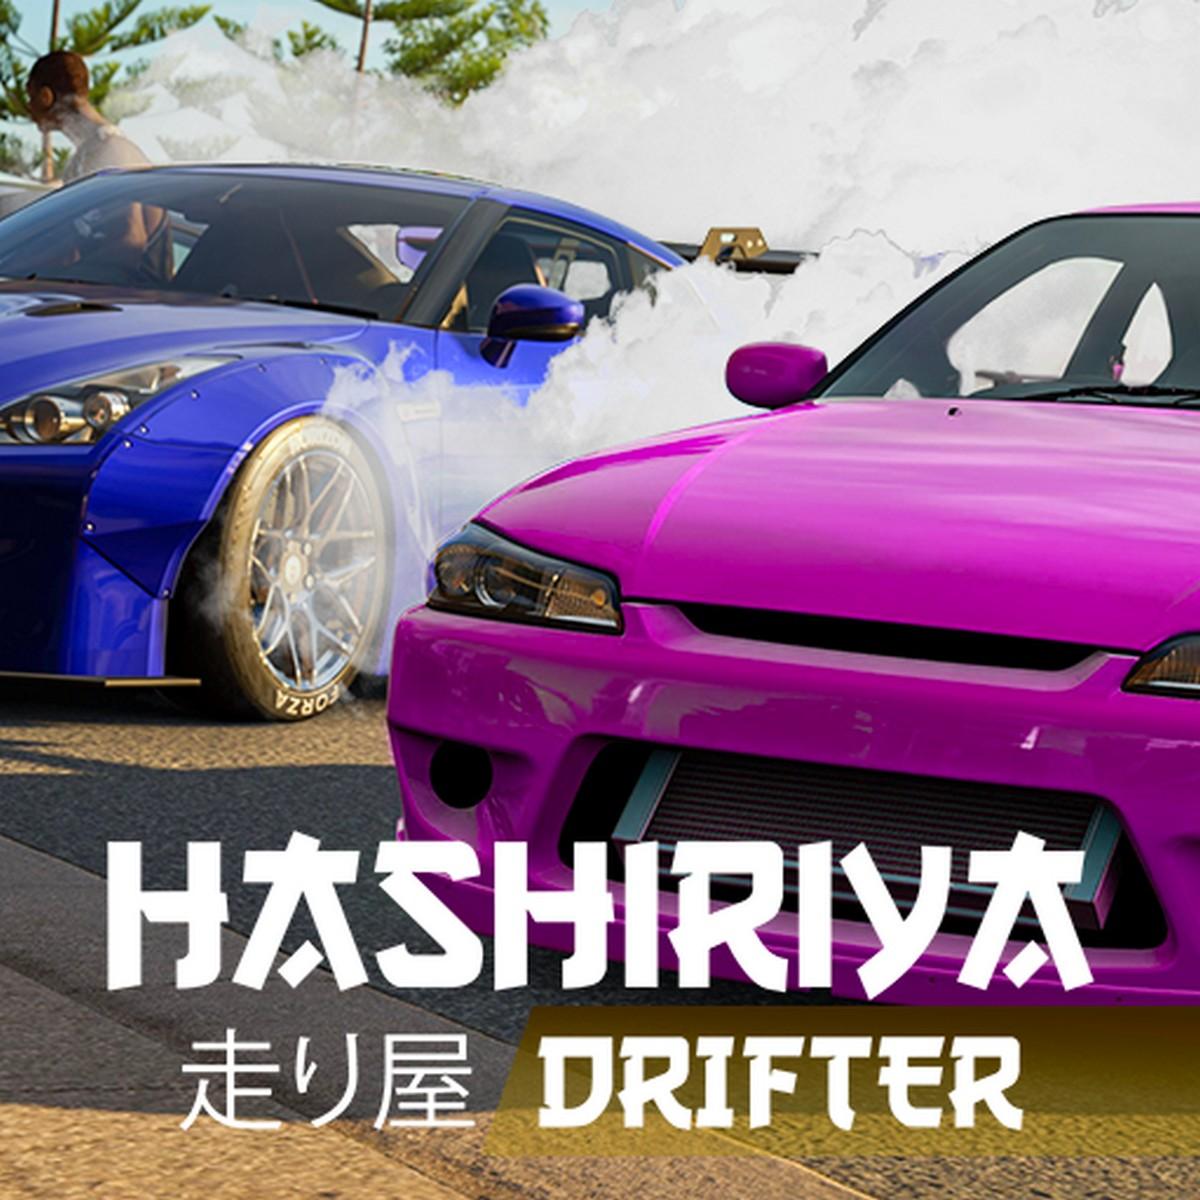 Hashiriya Drifter APK MOD v1.6.5 (Dinero infinito) icon